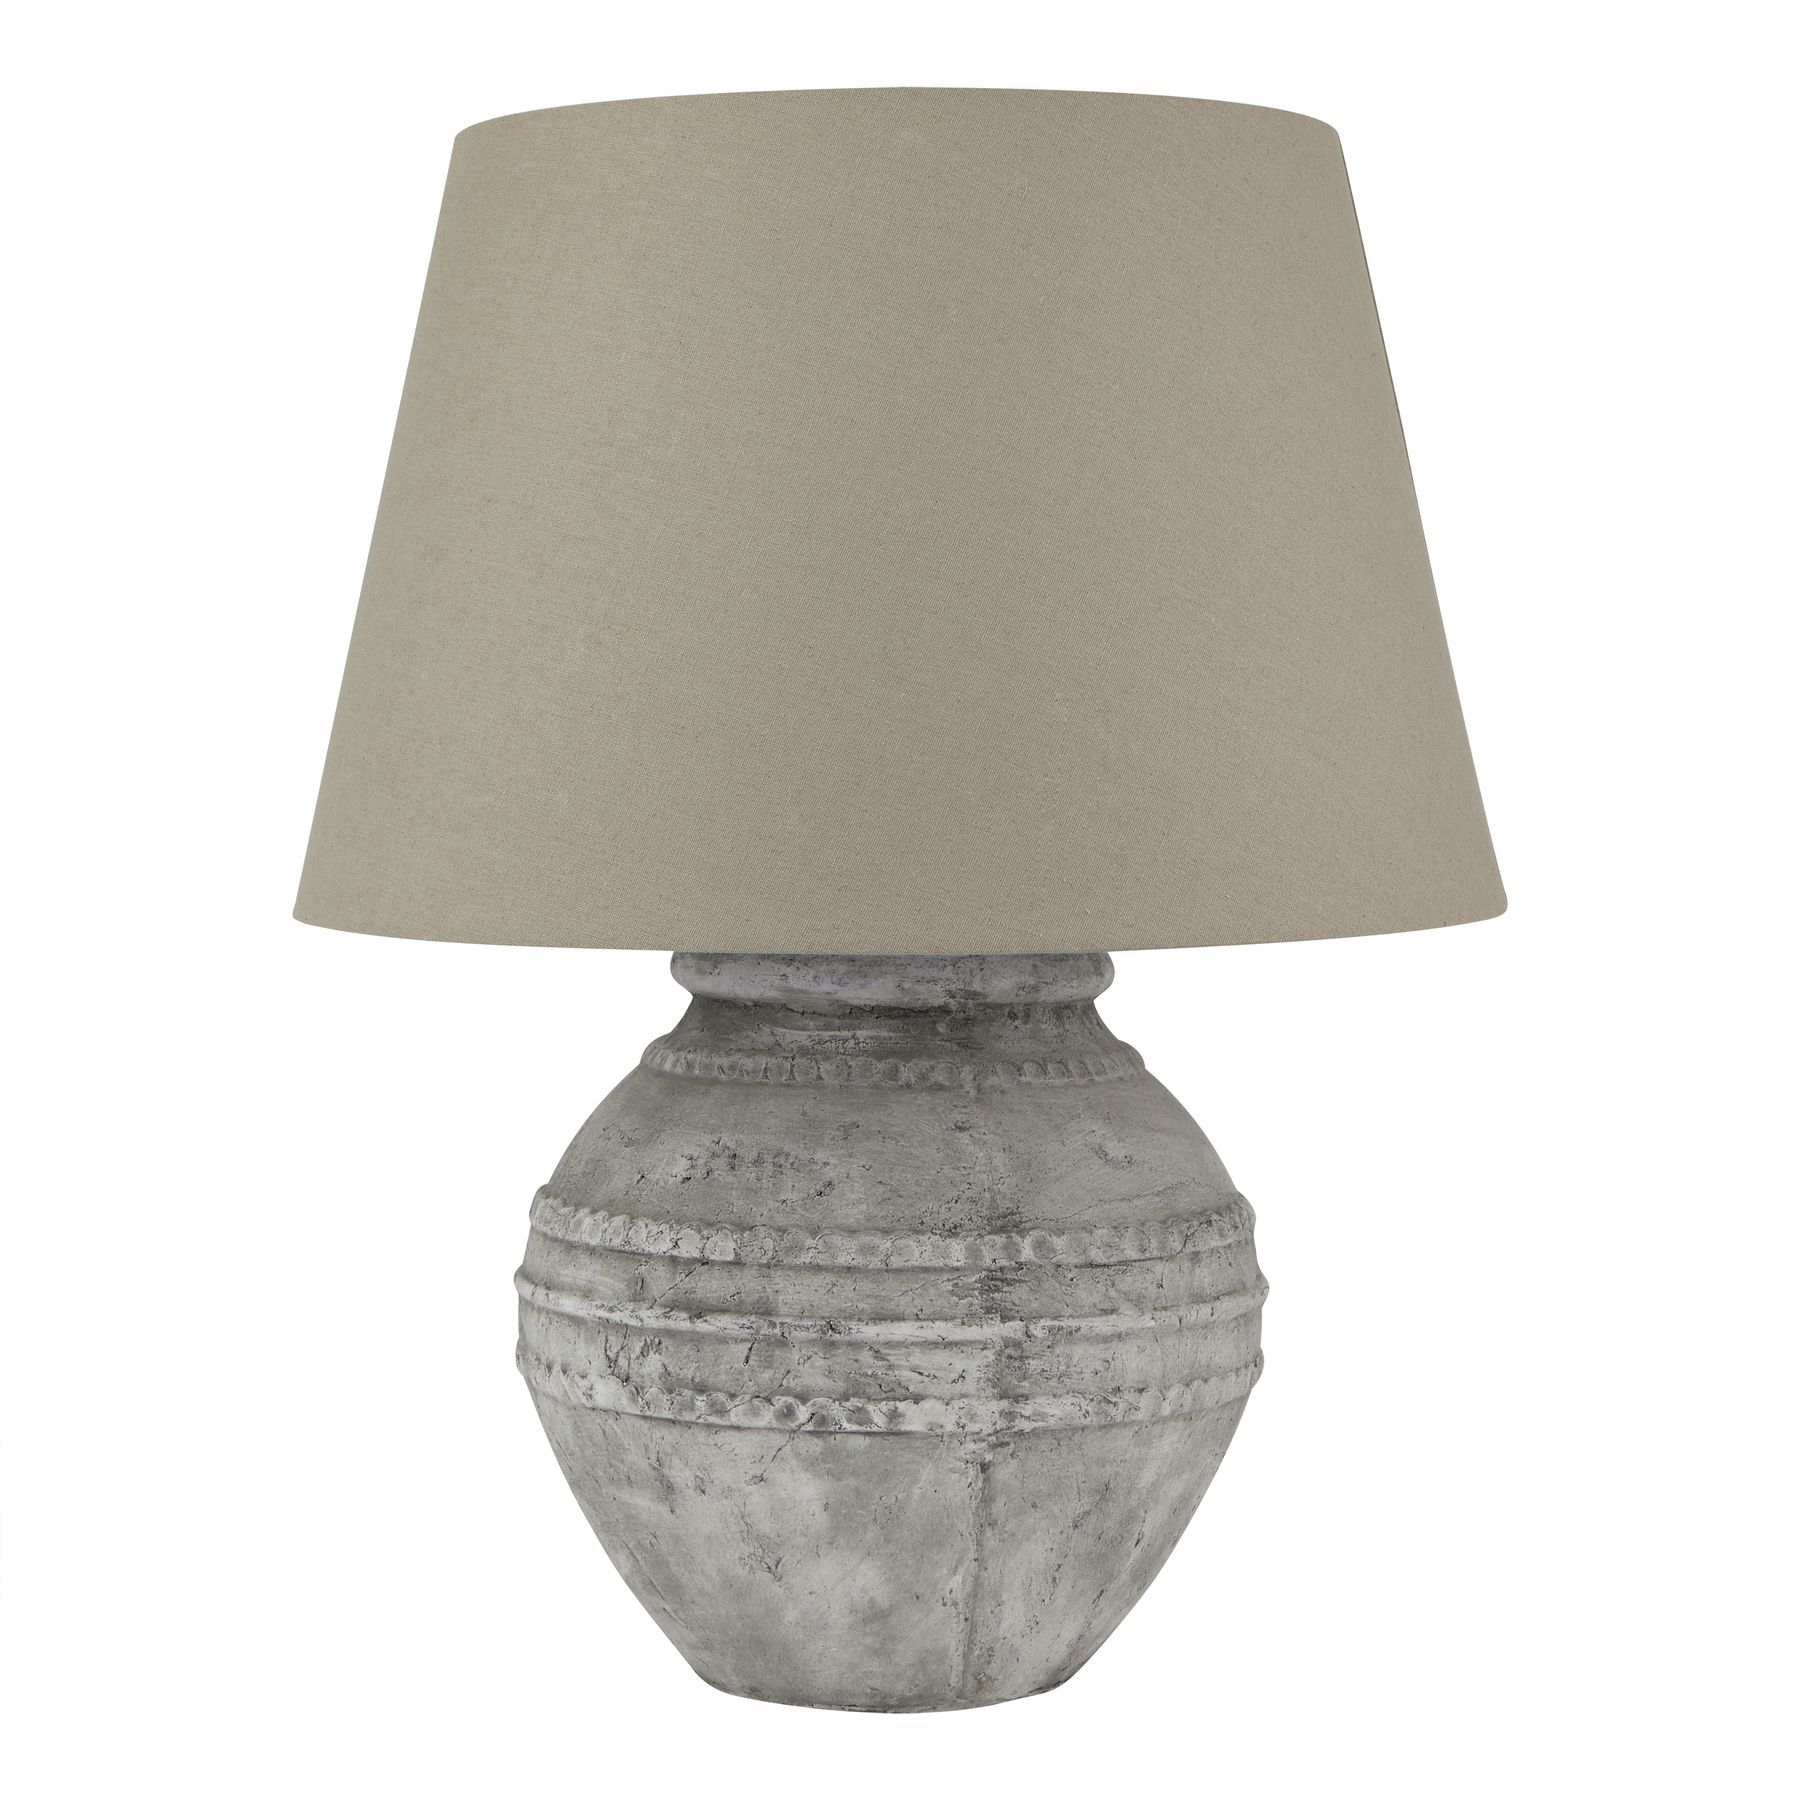 Athena Stone Regola Lamp - Image 1